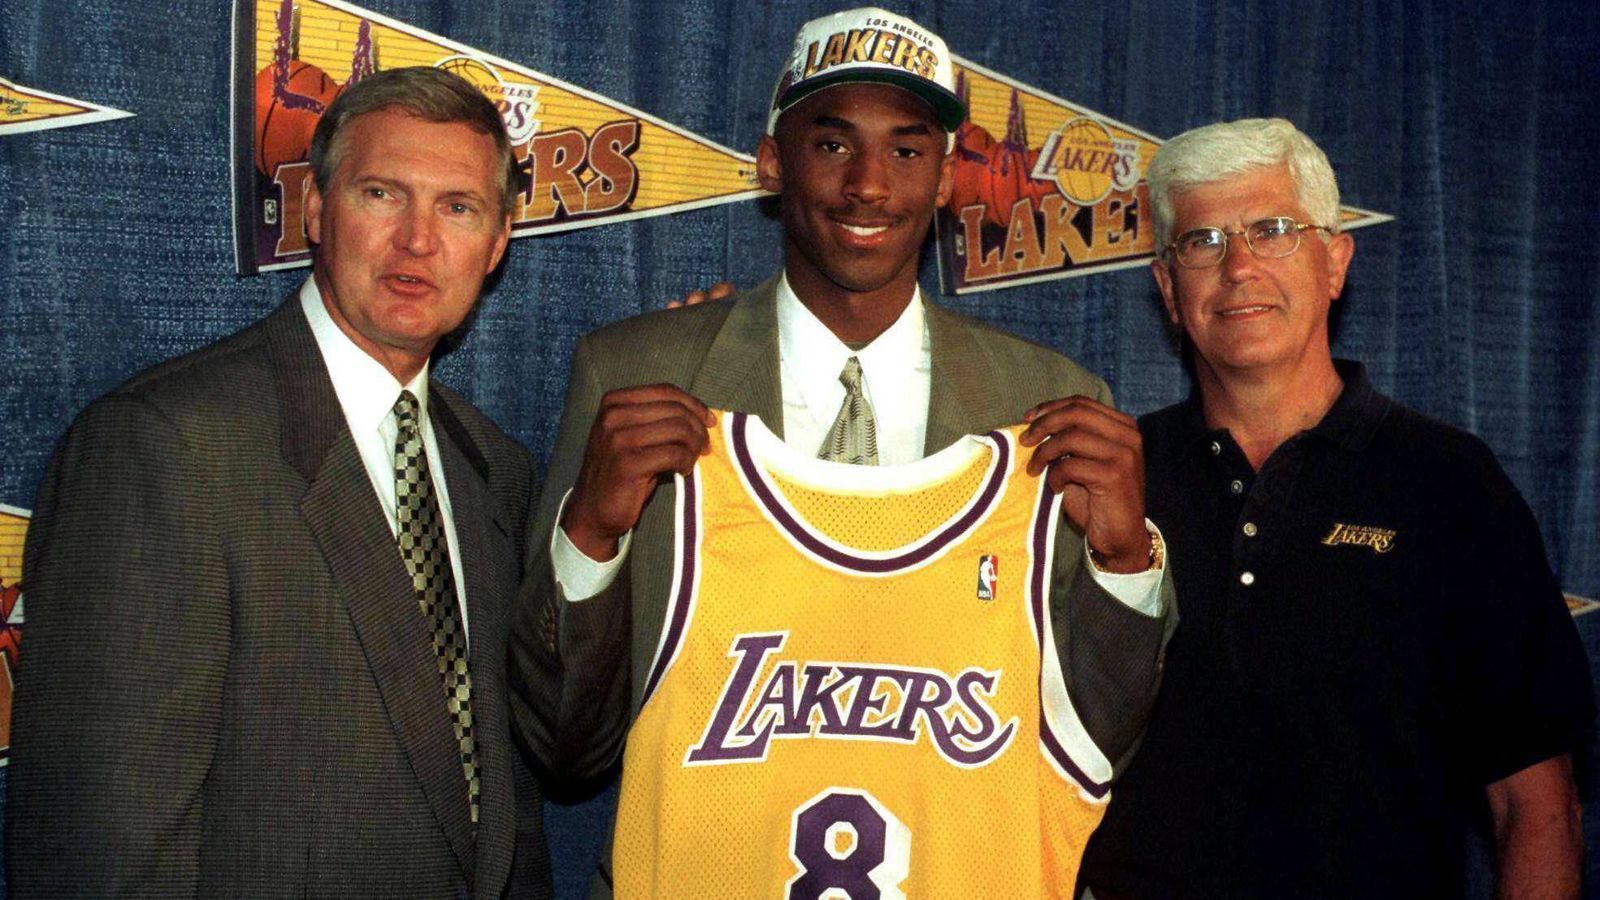 
                <strong>Von der High School in die NBA</strong><br>
                Von dort ging es direkt in die NBA - damals noch möglich. Bryant meldete sich nach der High School für den NBA-Draft an. Dort wurde er 1996 an 13. Stelle von den Charlotte Hornets ausgewählt. Am 1. Juli 1996 wurde er im Austausch für Center Vlade Divac an die Los Angeles Lakers abgegeben. Da er damals erst 17 Jahre alt war, mussten seine Eltern seinen ersten NBA-Vertrag mitunterzeichnen.
              